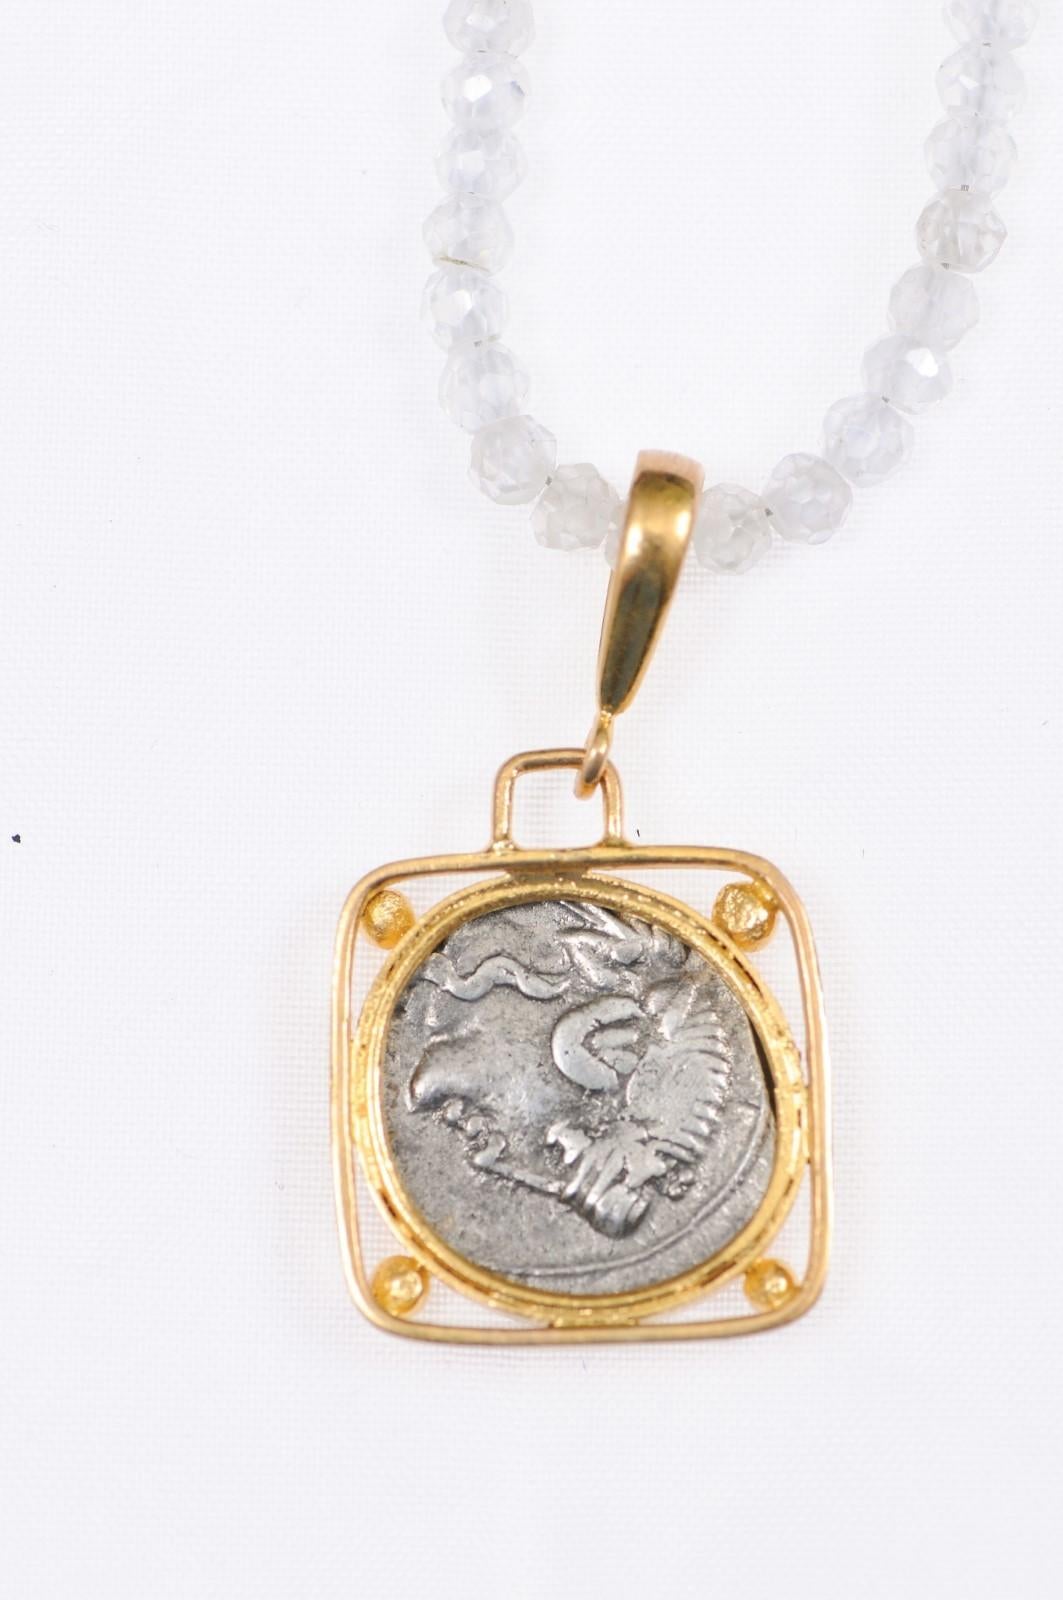 Eine authentische Q. Titius, Silber Denarius Münze (Rom, ca. 90 v. Chr.), in einem benutzerdefinierten 22k Gold Lünette, in einem quadratischen Lünette mit Gold Perle Akzente an jeder Ecke, und 22k Gold Bügel ausgesetzt. Die Vorderseite dieser Münze